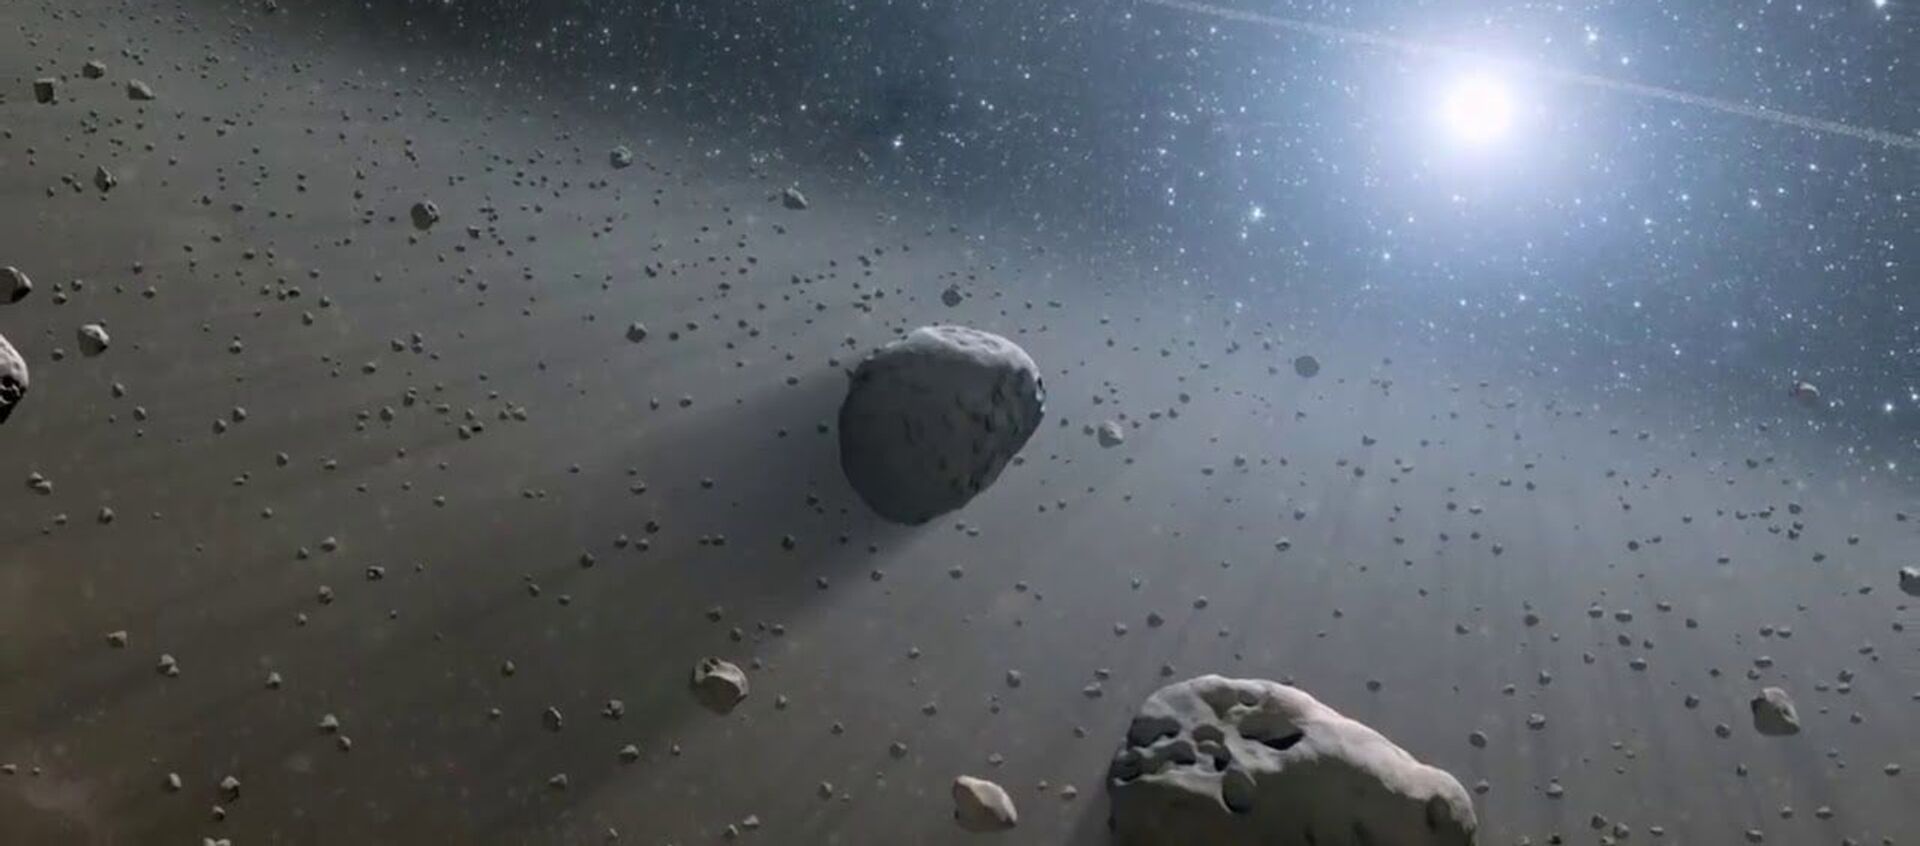 Asteroid - Sputnik Türkiye, 1920, 30.04.2020